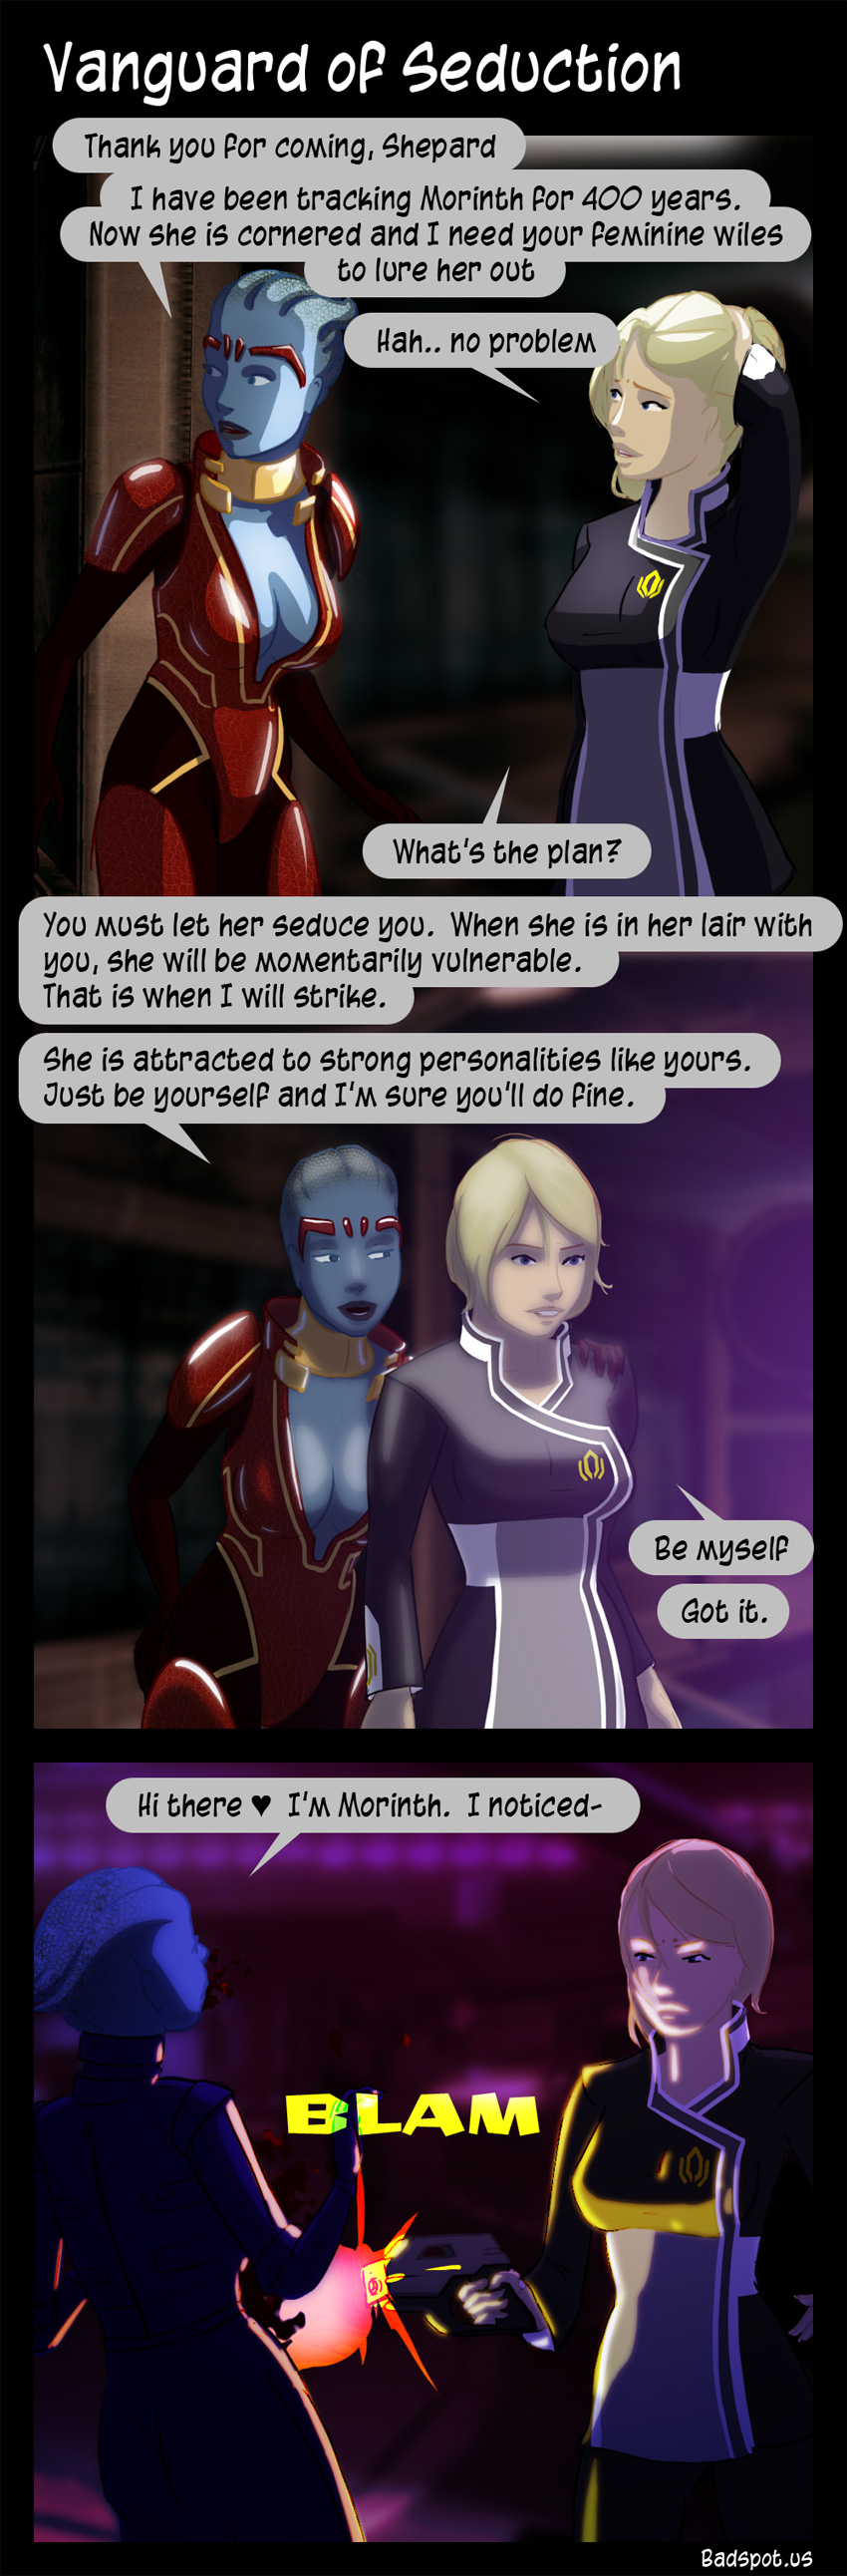 Mass Effect Comic Vanguard of Seduction